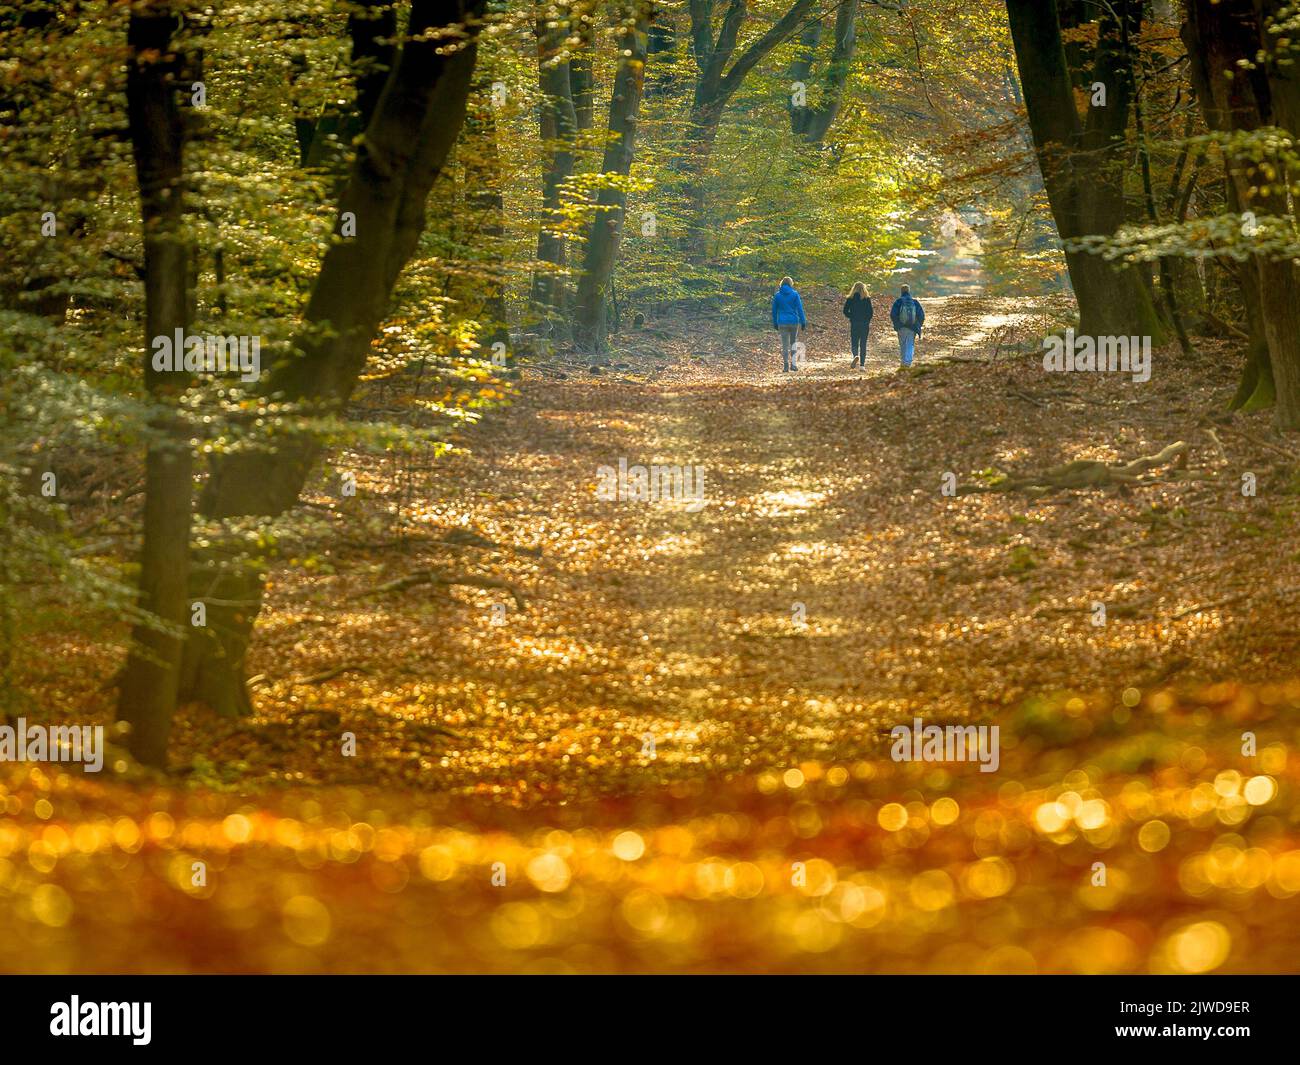 Les gens se promenant sur la passerelle dans la forêt d'automne avec le feuillage d'automne coloré dans des conditions de brumeux. Veluwe, province de Gelderland, pays-Bas. Banque D'Images